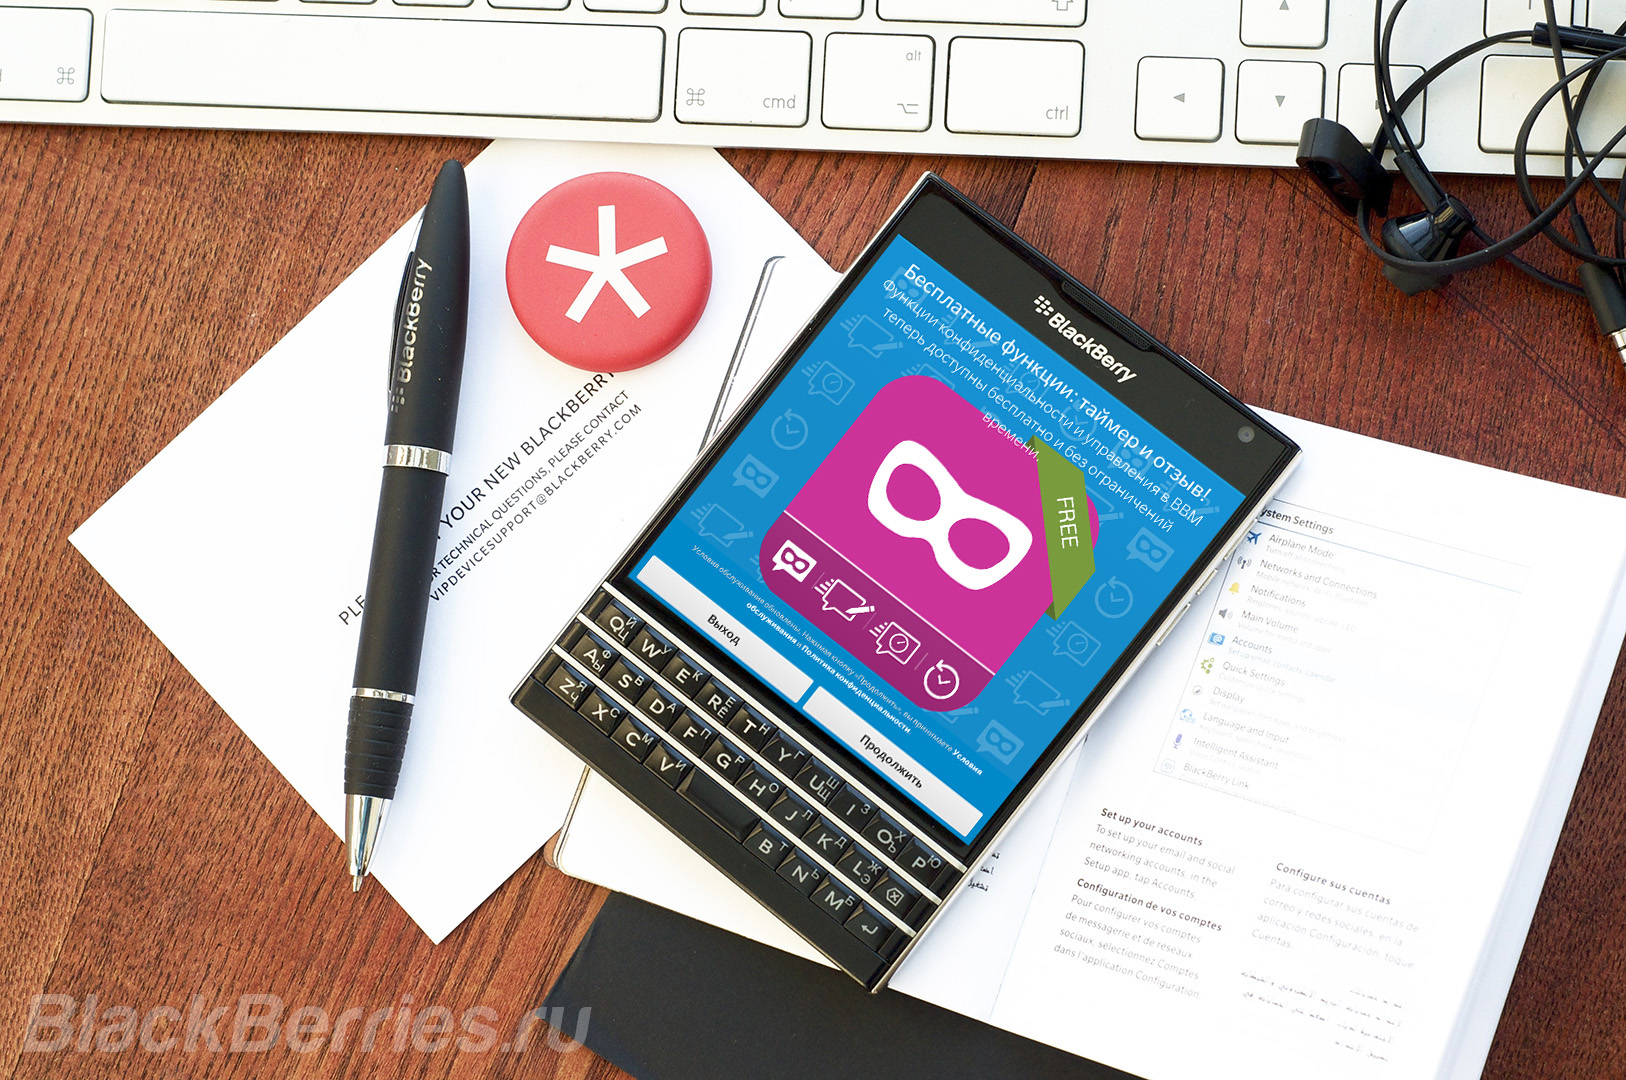 BBM-BlackBerry10-Update